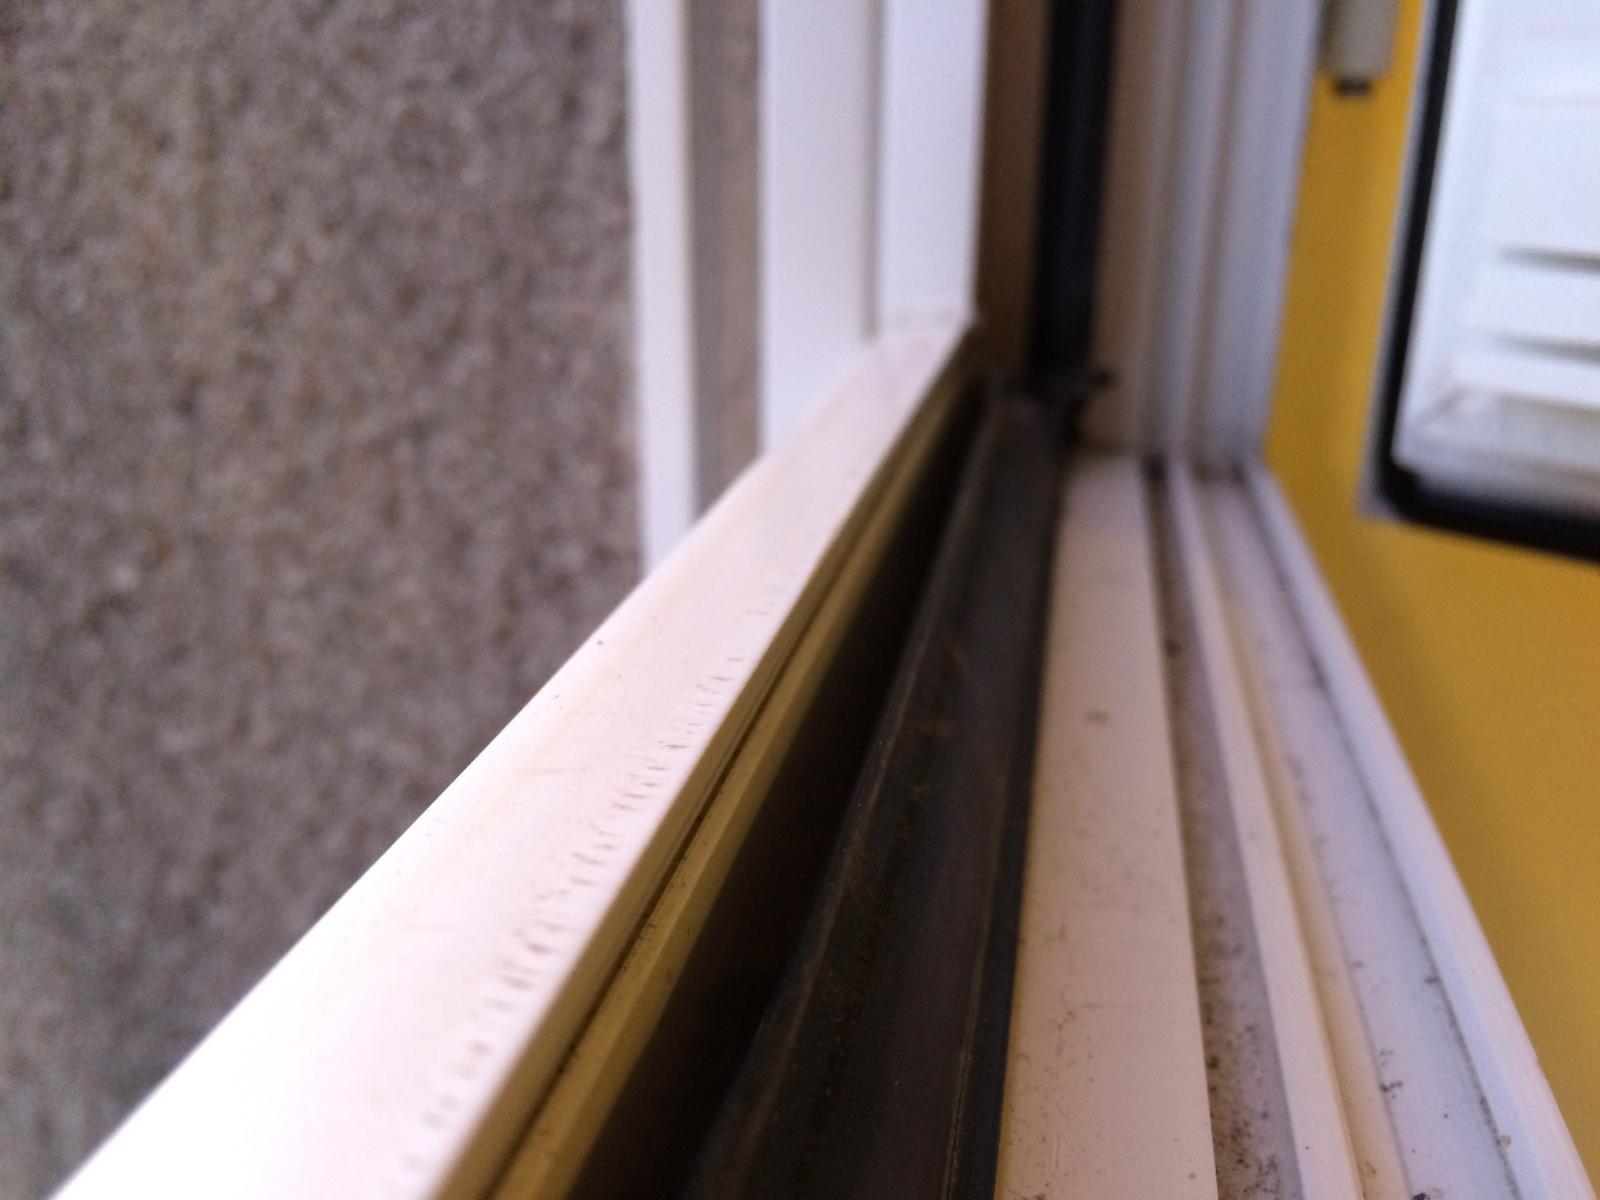 Changement joint soudé fenêtre PVC